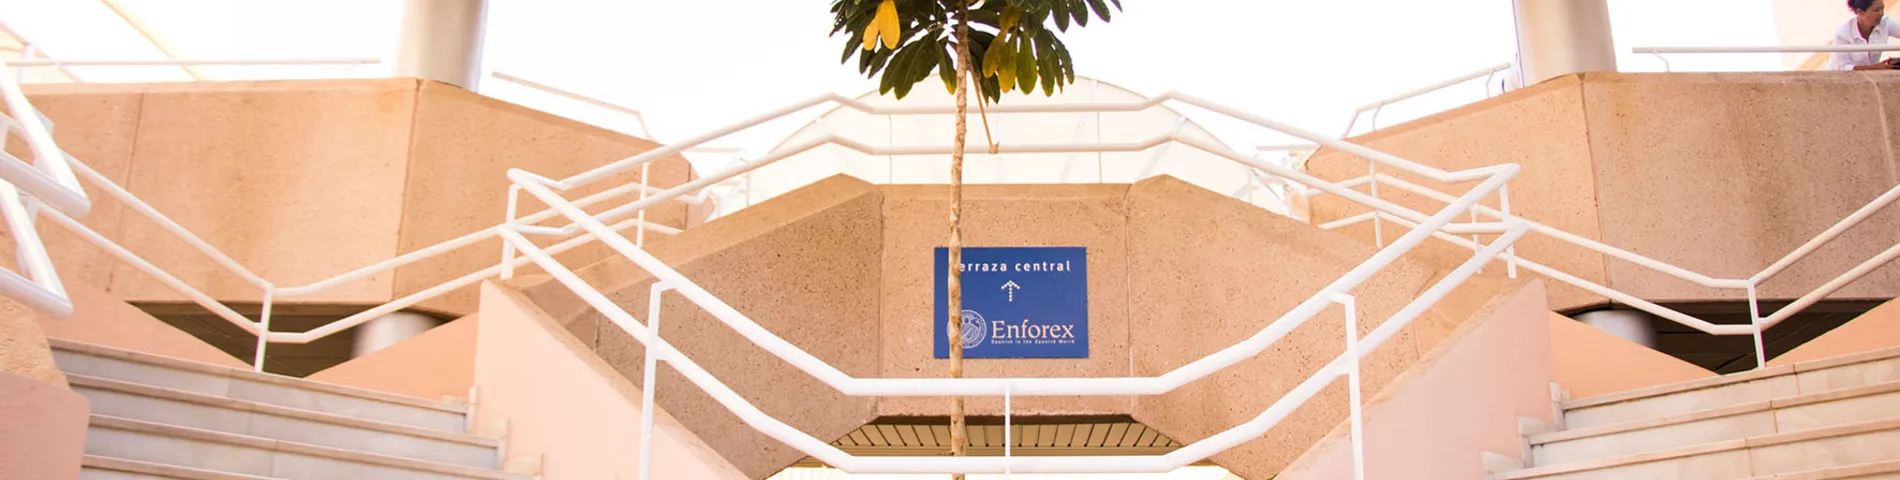 Enforex International Summer Centre - Centro bilde 1